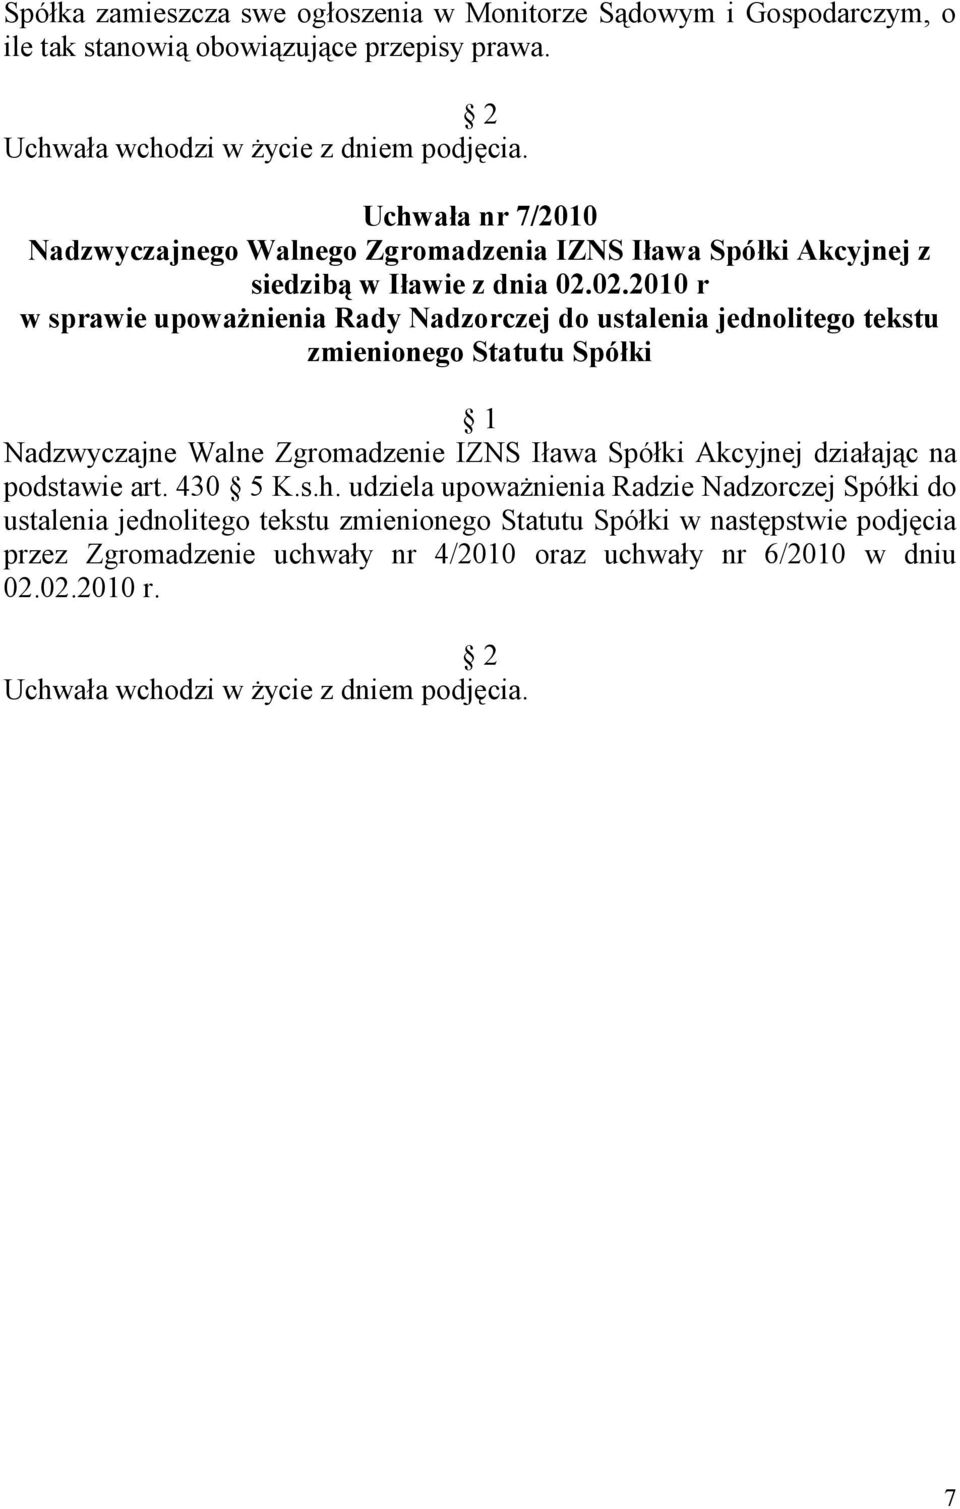 Zgromadzenie IZNS Iława Spółki Akcyjnej działając na podstawie art. 430 5 K.s.h.